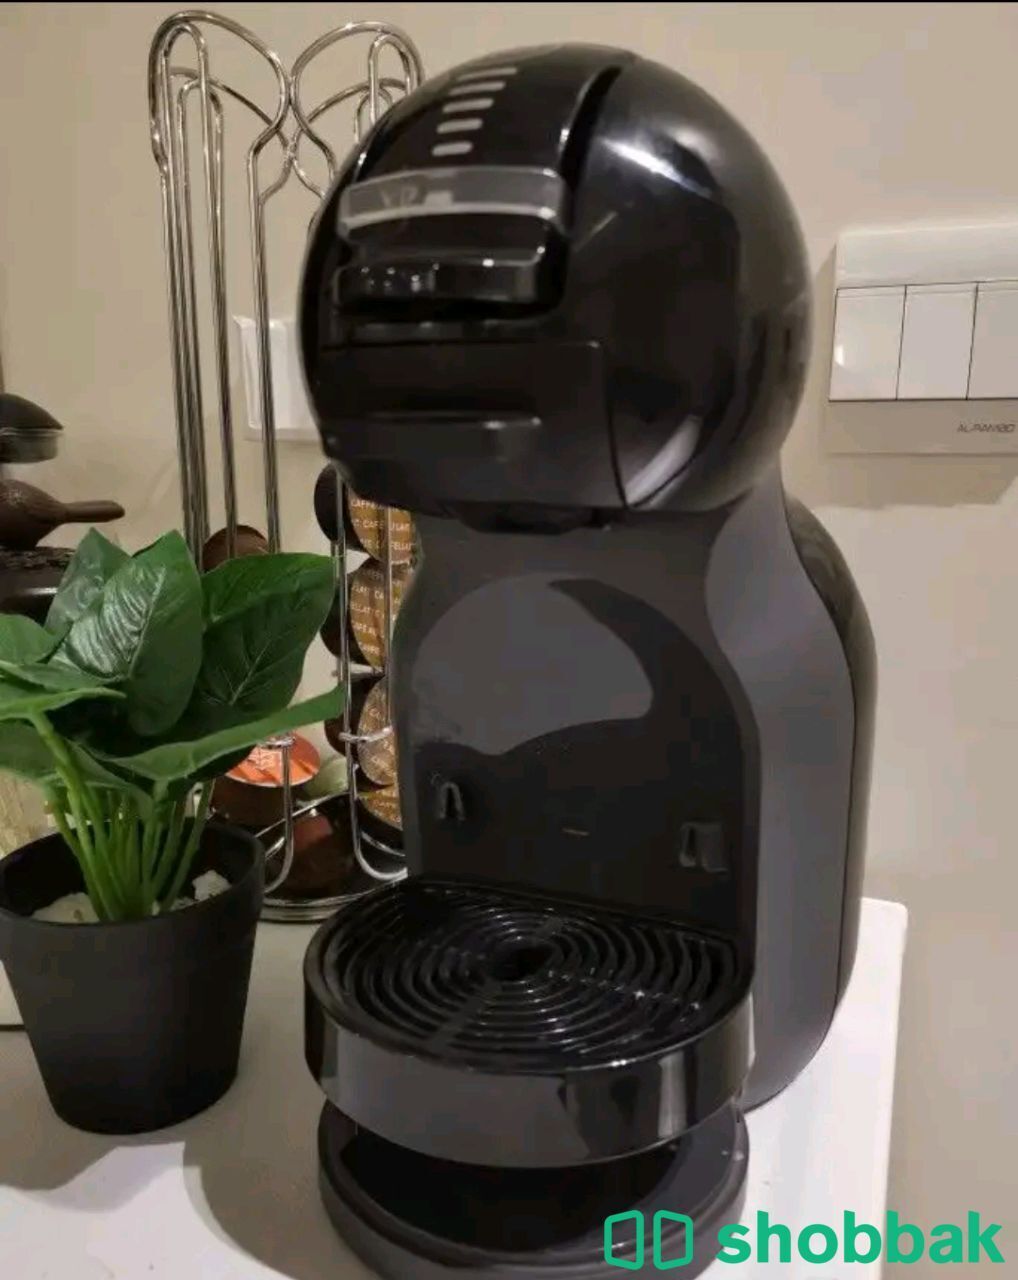 آلة قهوة من دولتشي Shobbak Saudi Arabia